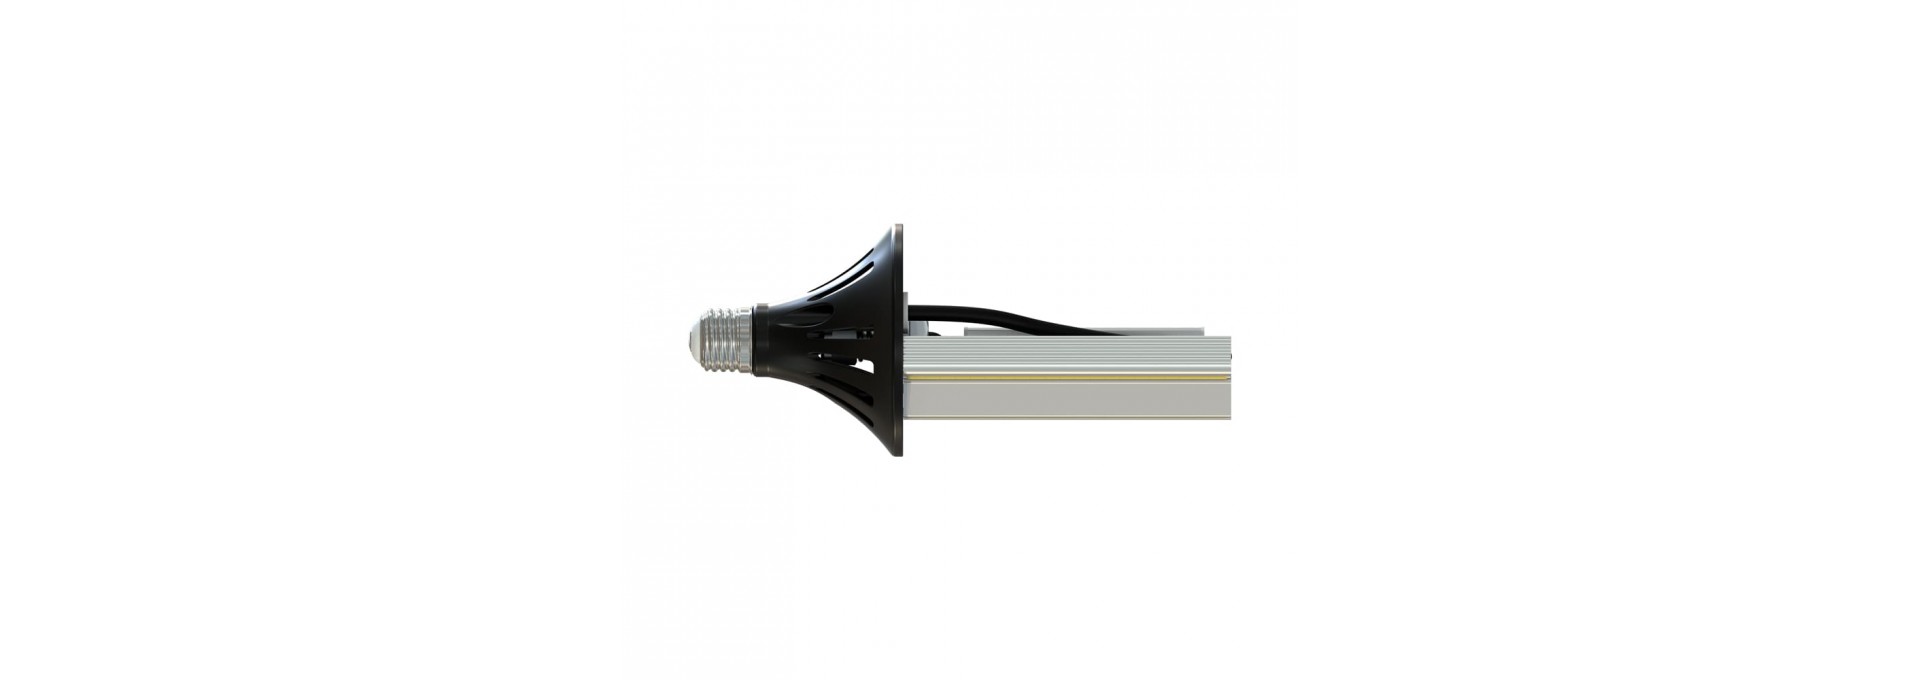 Светодиодная лампа ПромЛед Е27-Д 20 COB 6500К